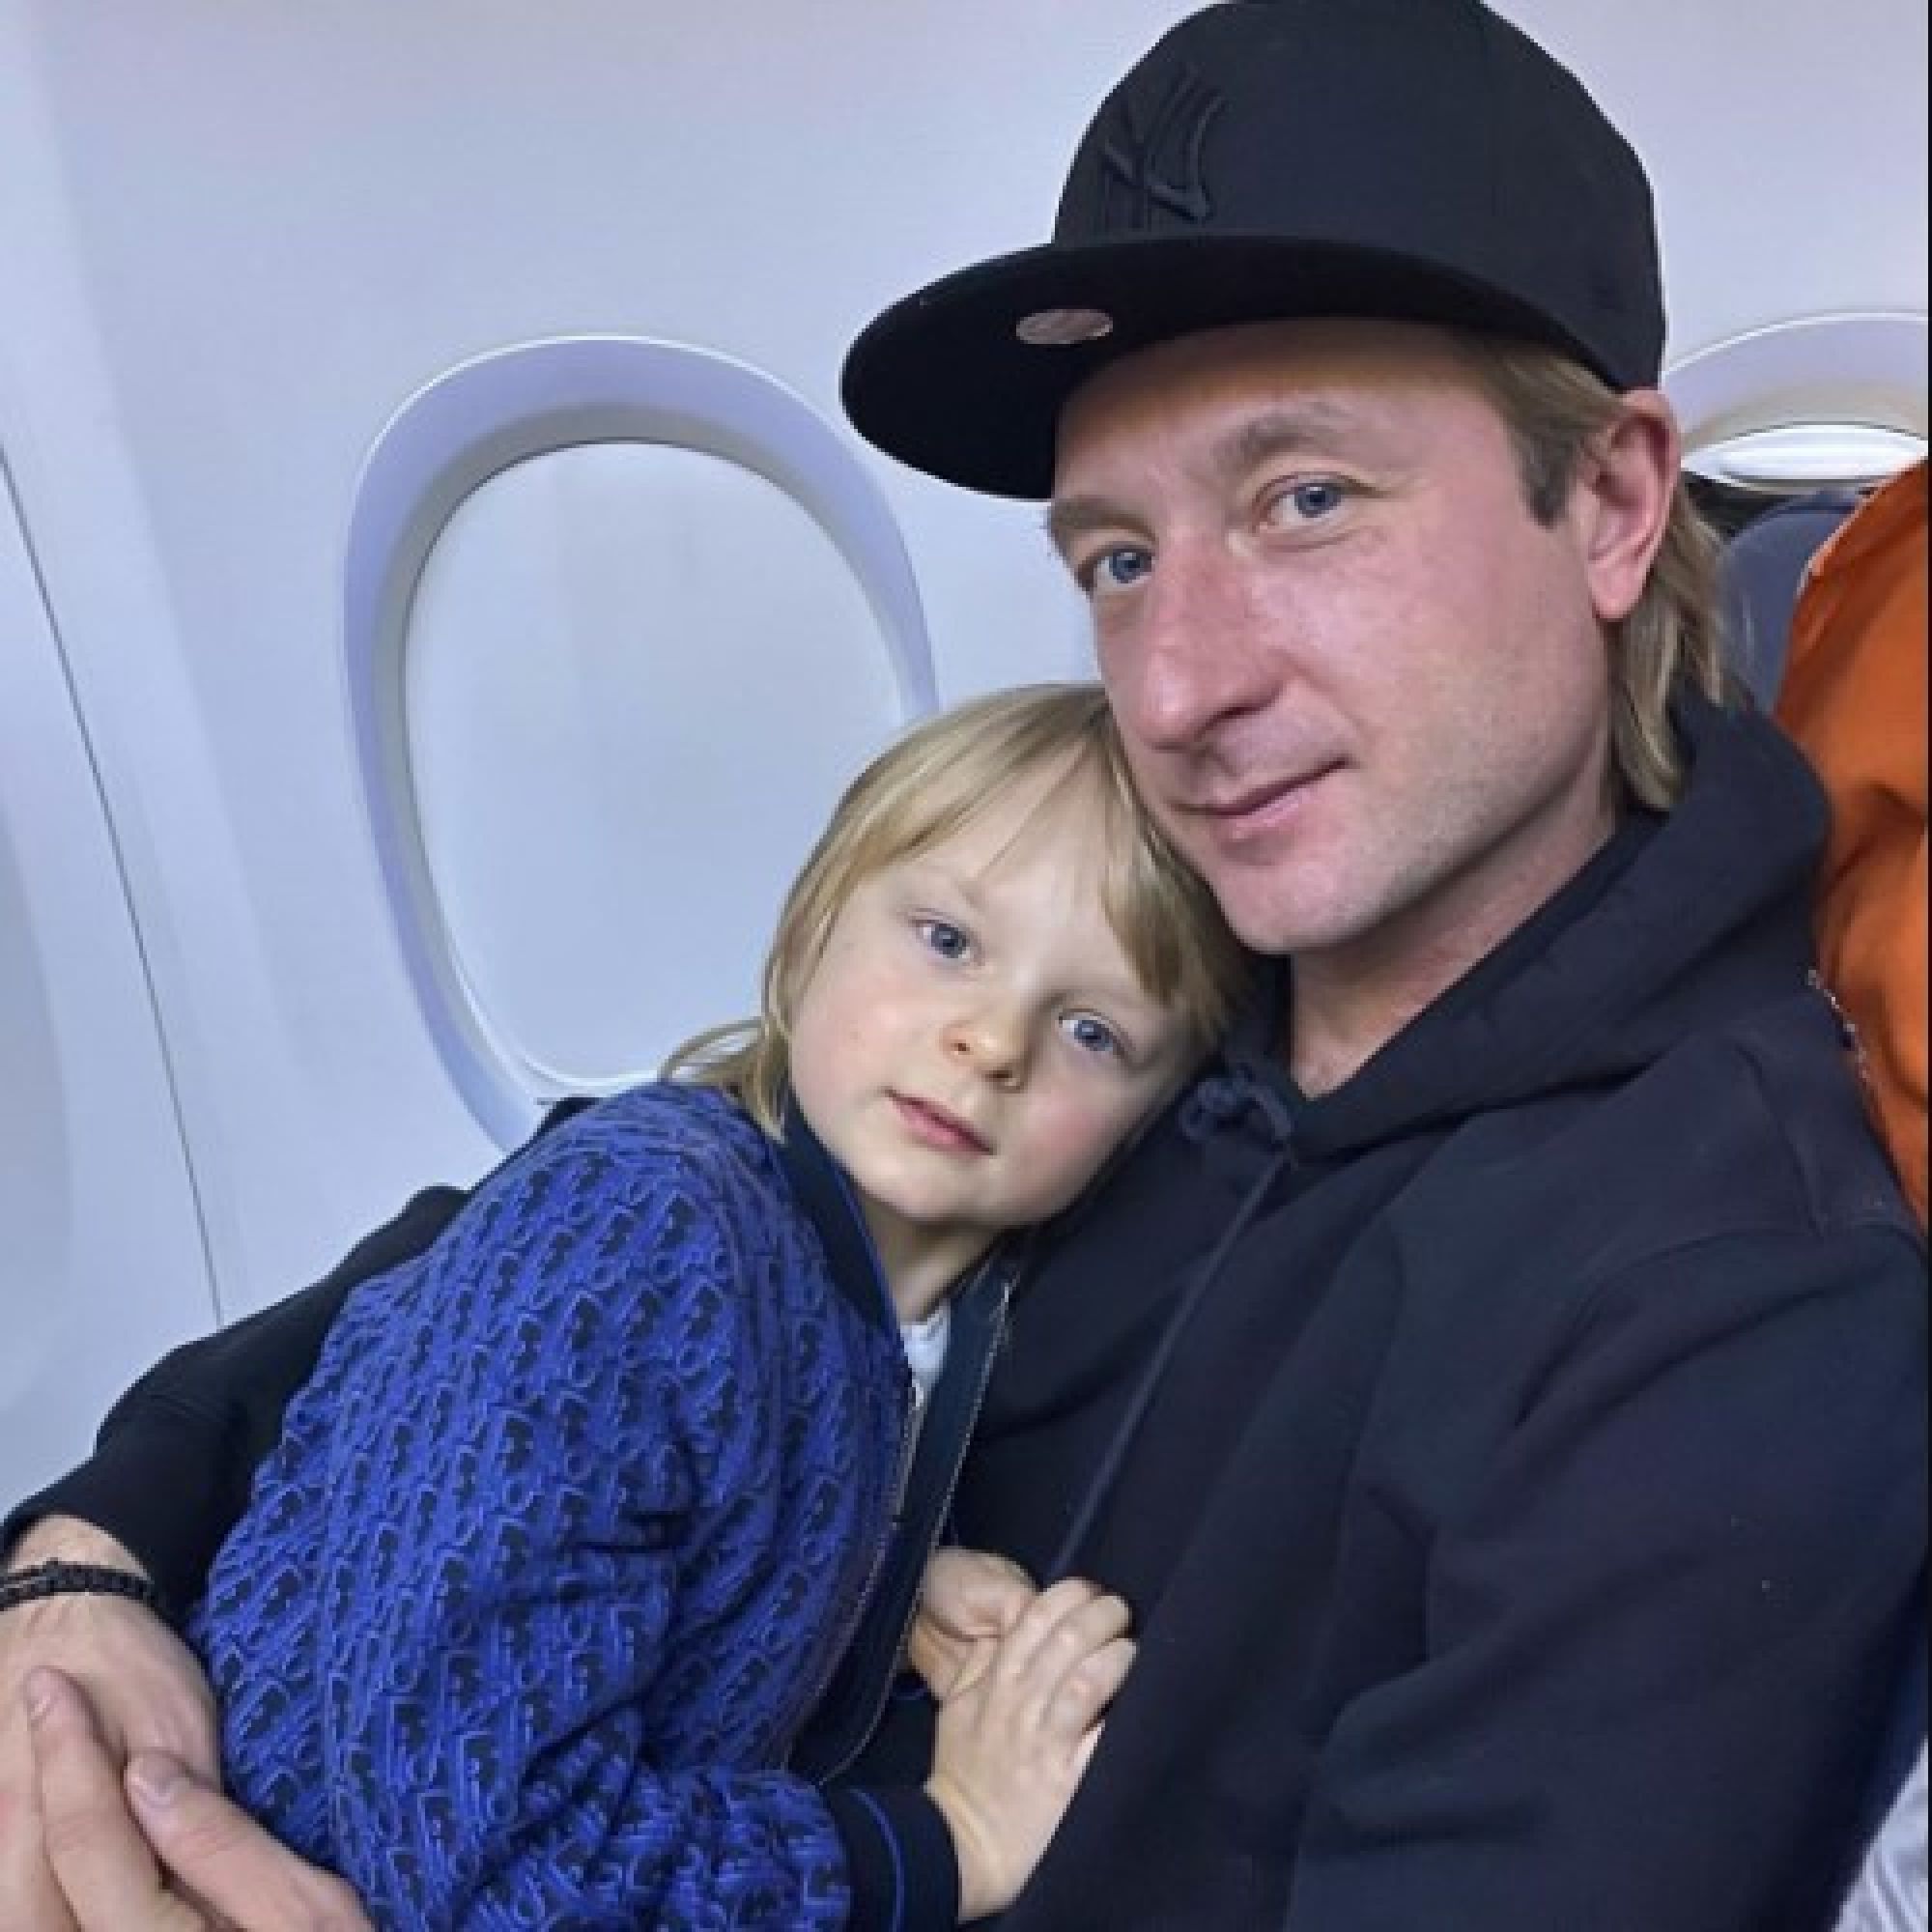 Яна Рудковская и Евгений Плющенко обратились в полицию, опасаясь за жизнь своего 6-летнего сына